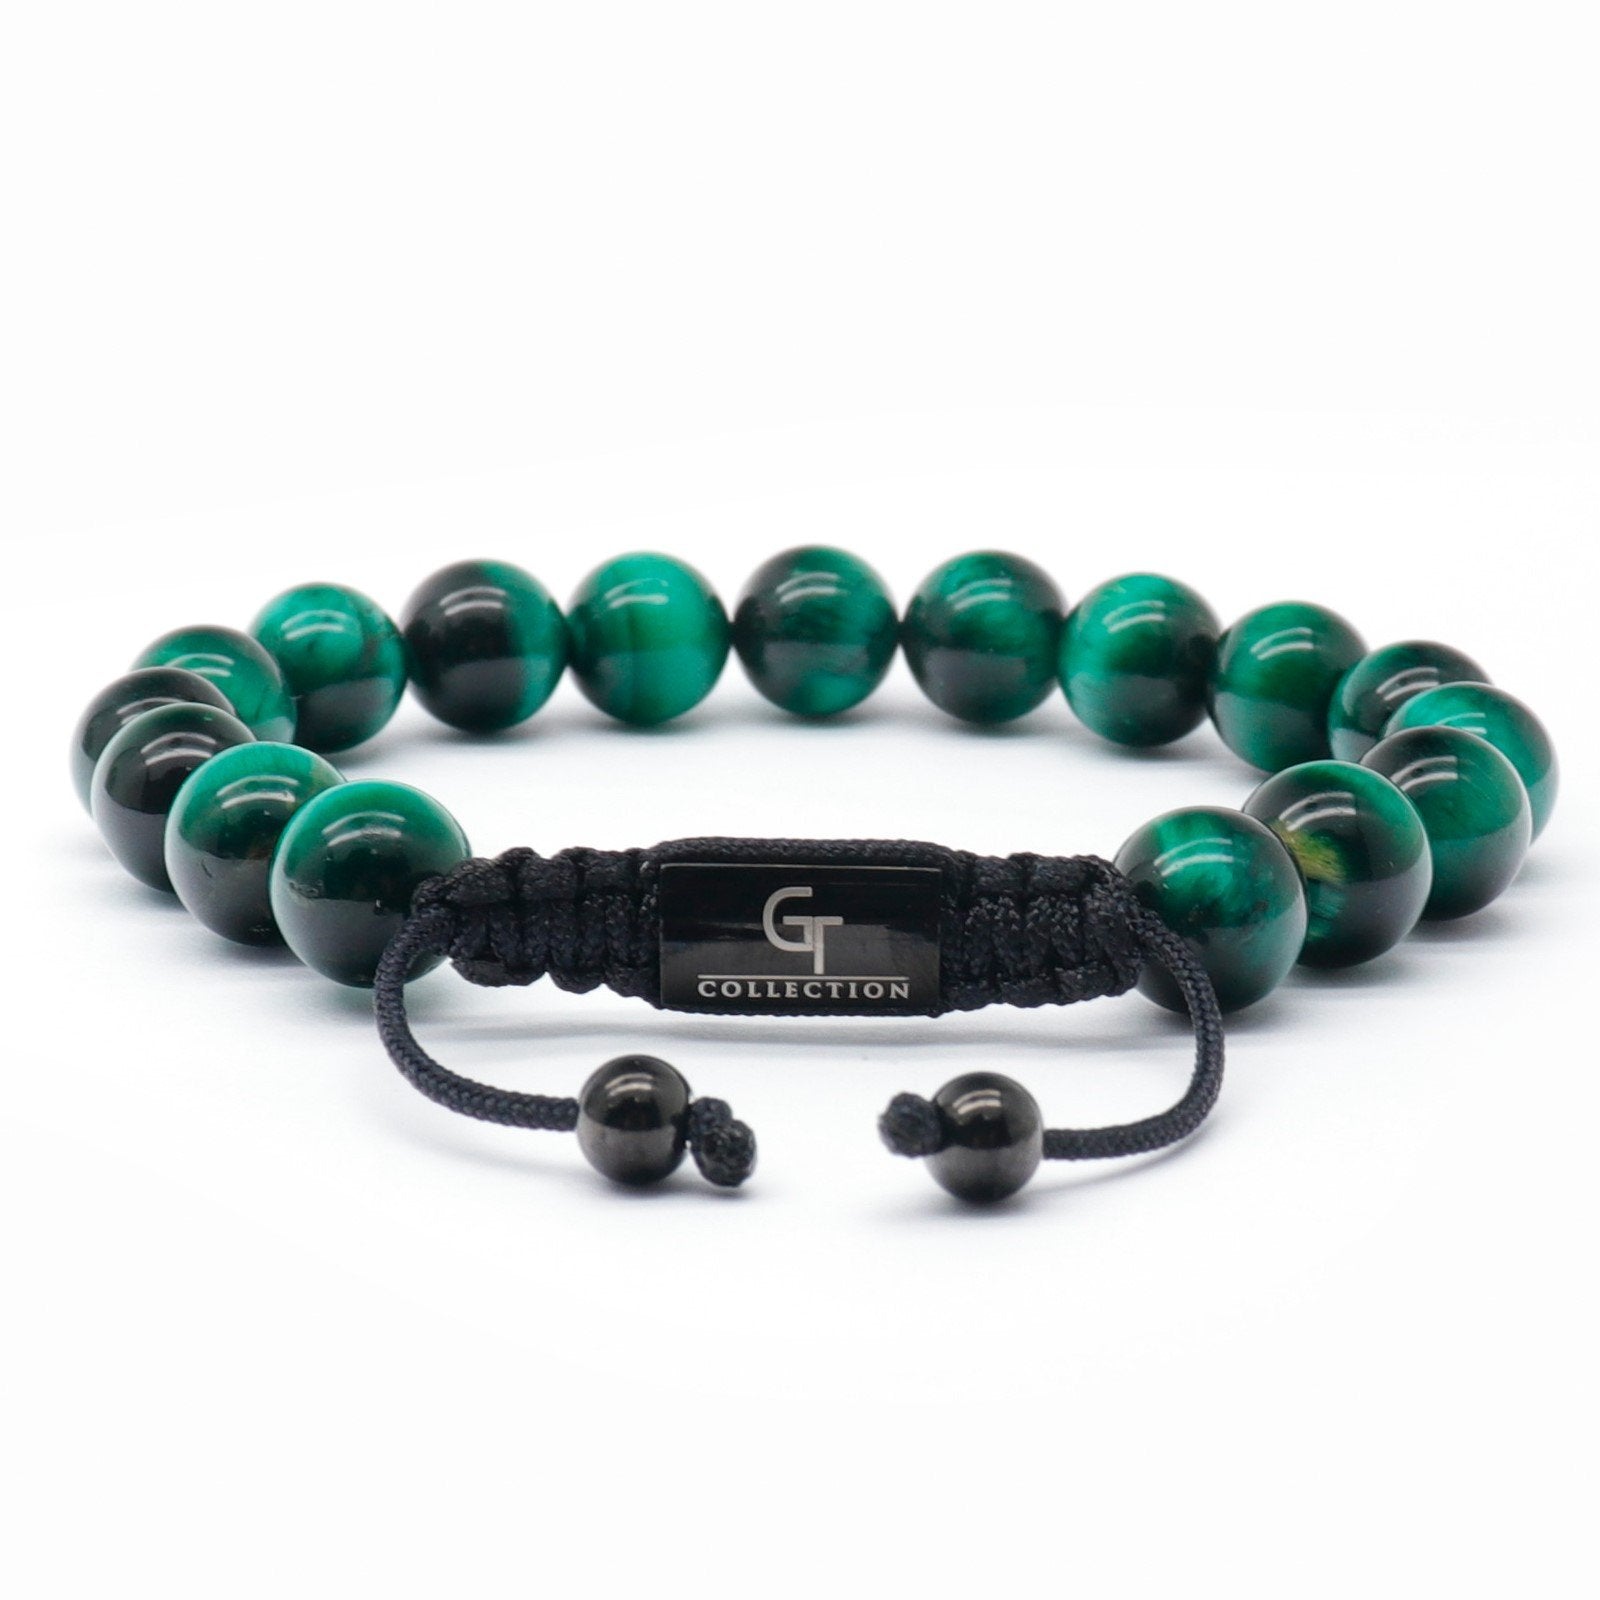 Bracelet - Men's MALACHITE Beaded Bracelet - Green Gemstones